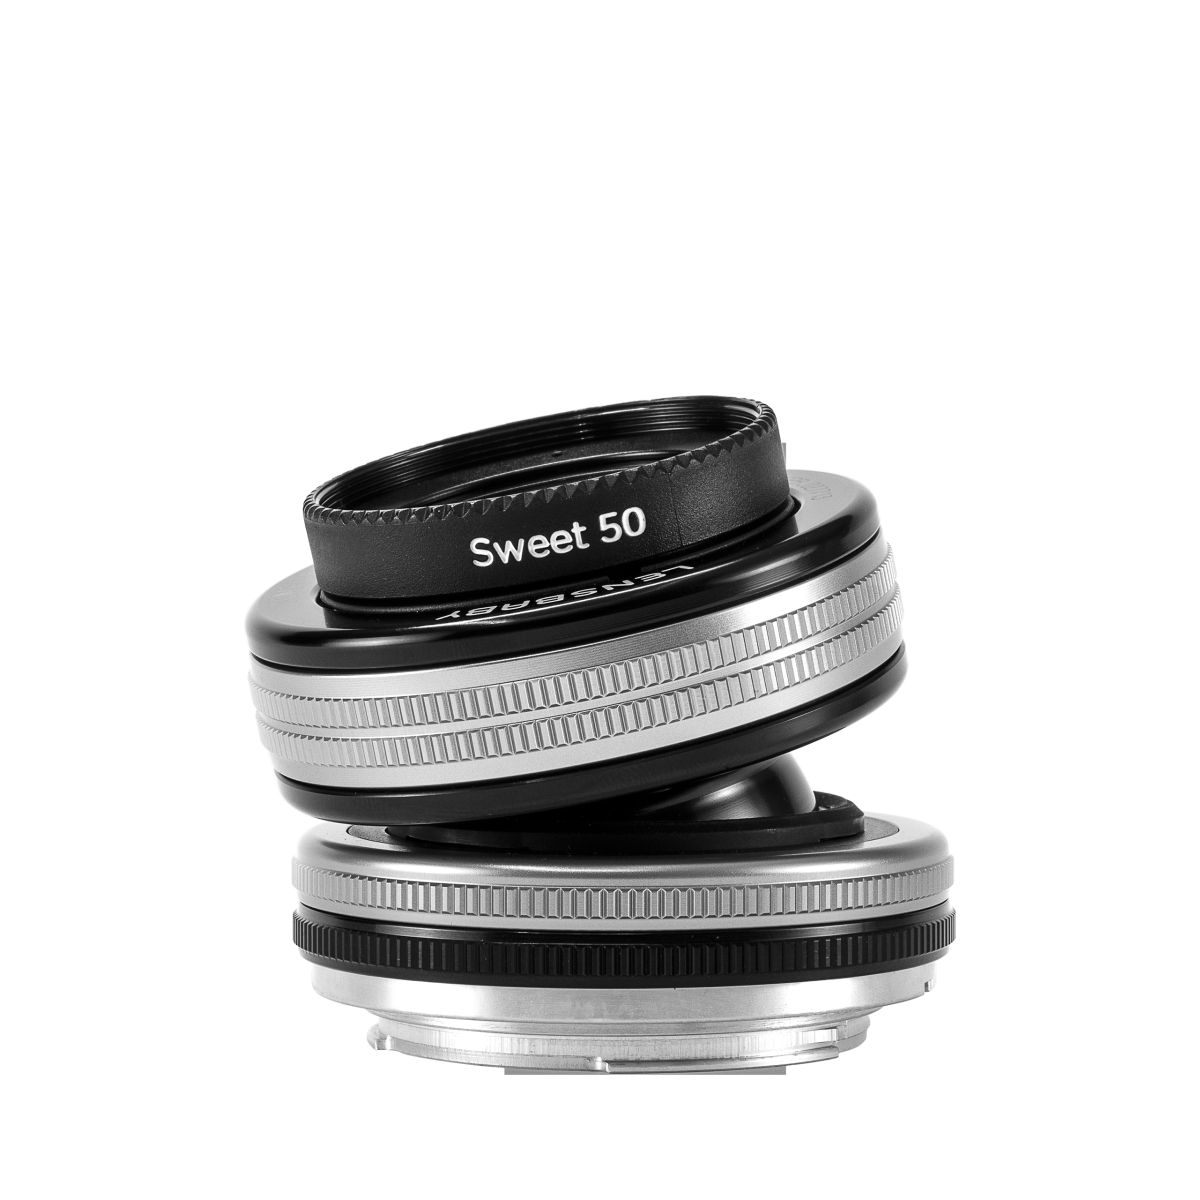 Lensbaby Soft Focus Optic Swap Macro Kit Fuji X